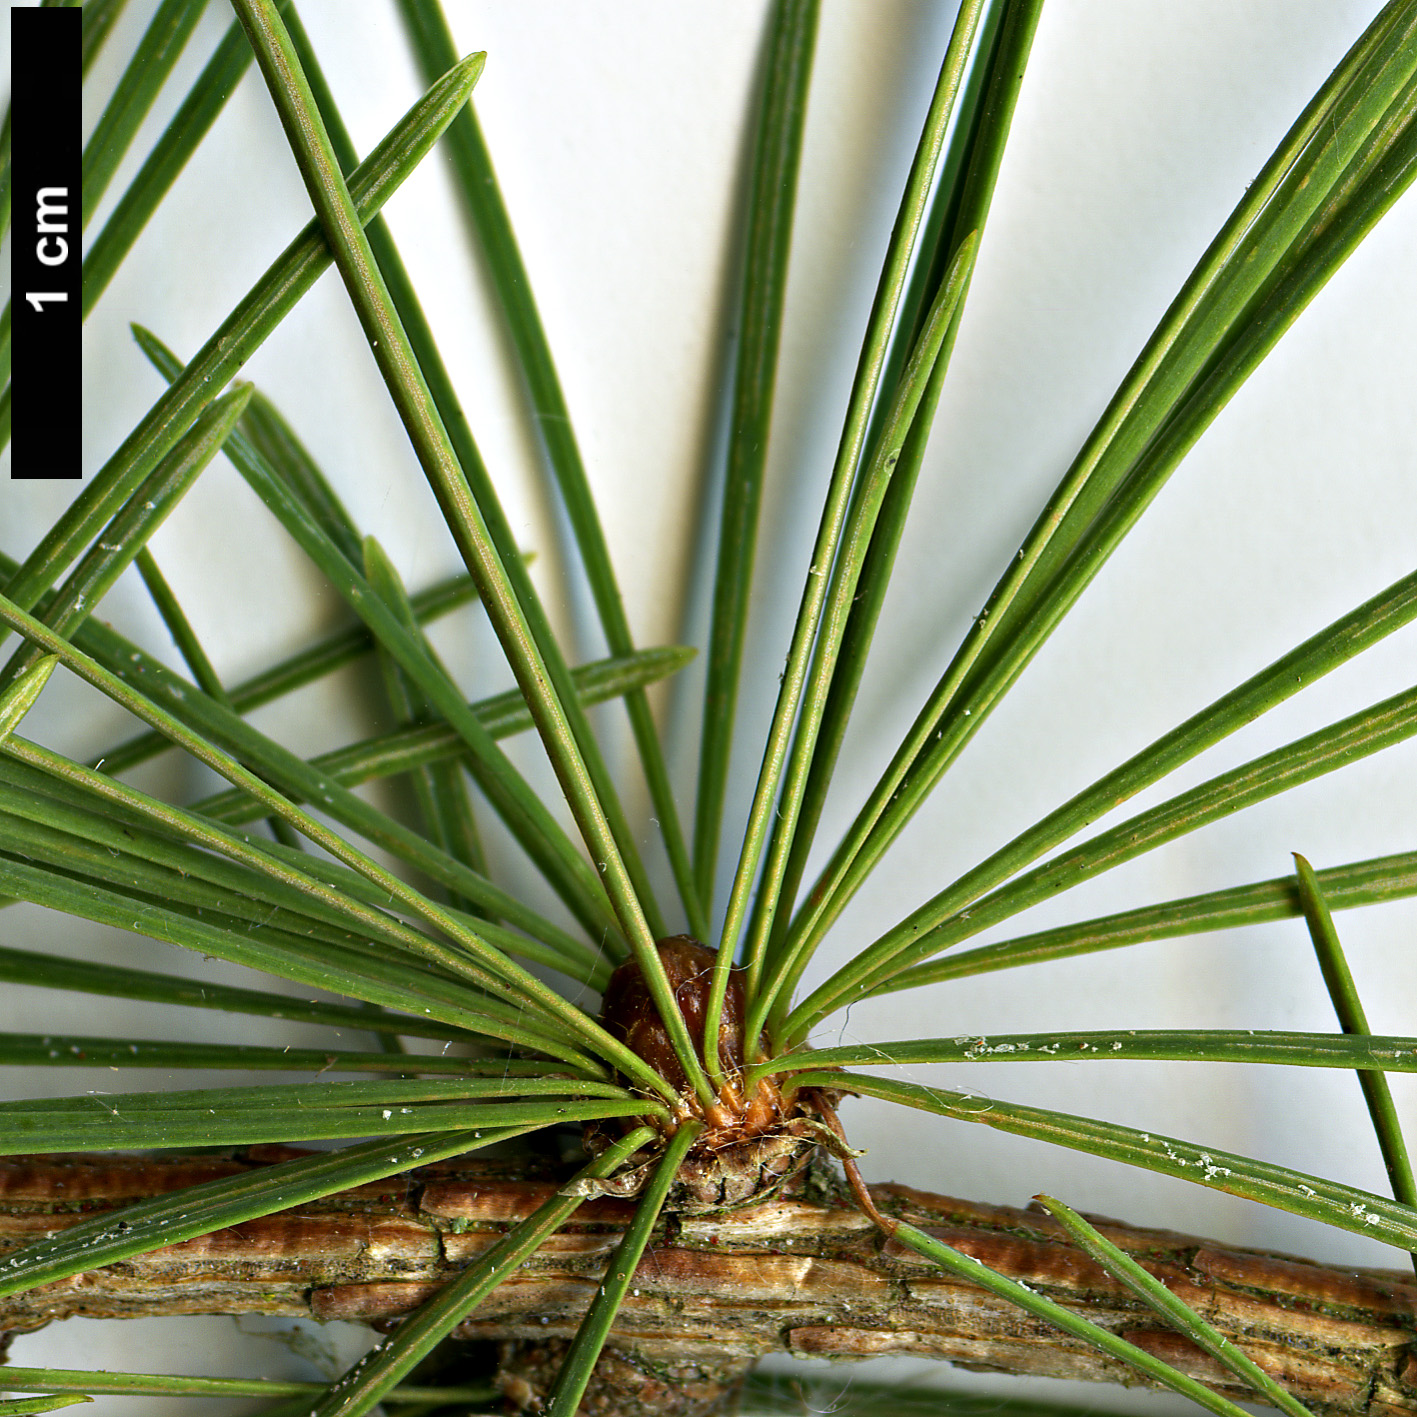 High resolution image: Family: Pinaceae - Genus: Larix - Taxon: potaninii - SpeciesSub: subsp. potaninii